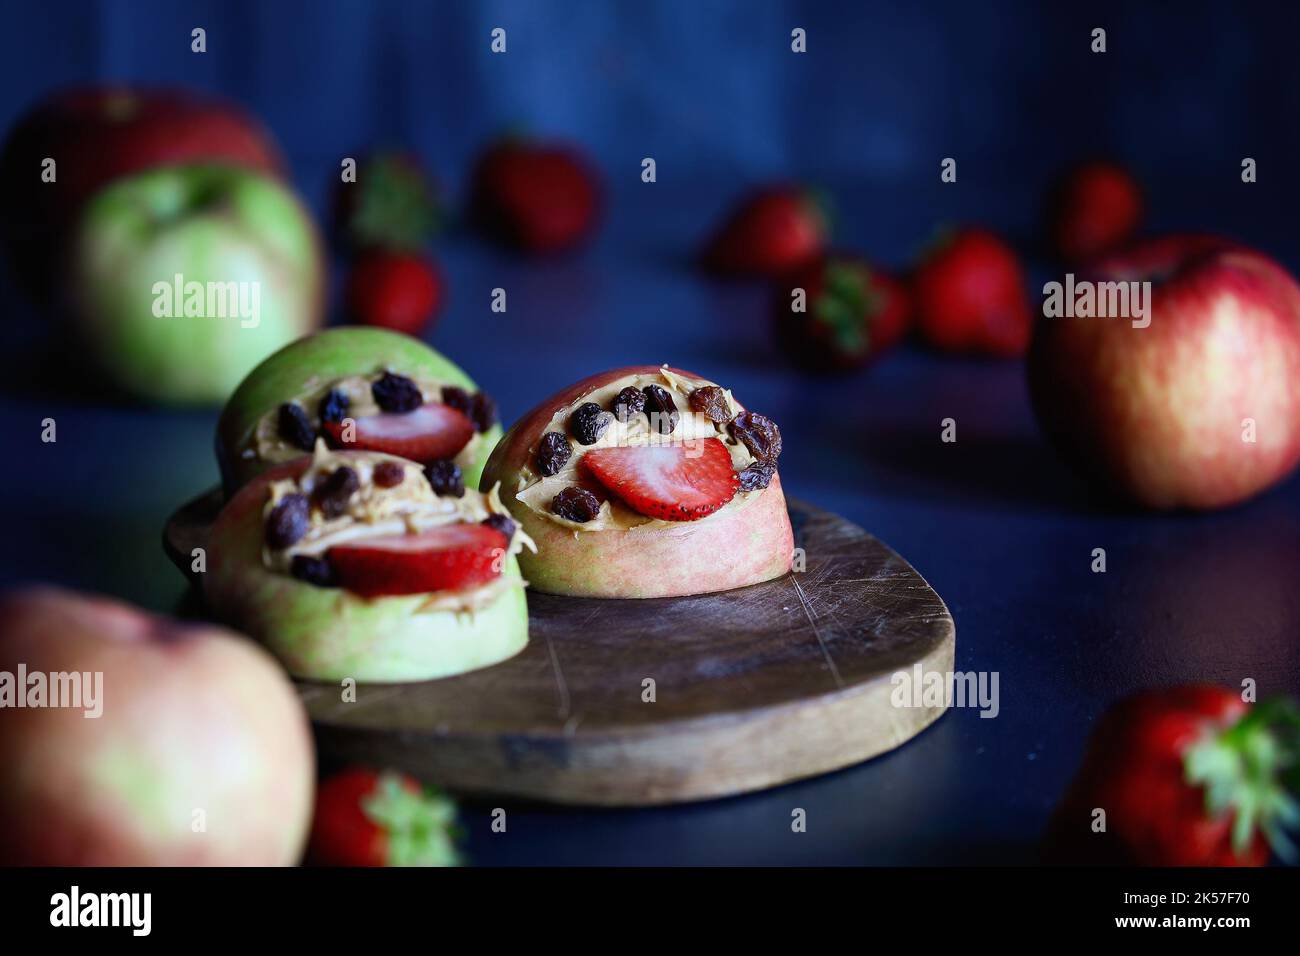 Les mouths de monstre de pomme s'ouvrent large avec des languettes de fraise et des dents de raisins secs. Rempli de beurre d'arachide. Mise au point sélective avec arrière-plan flou. Banque D'Images